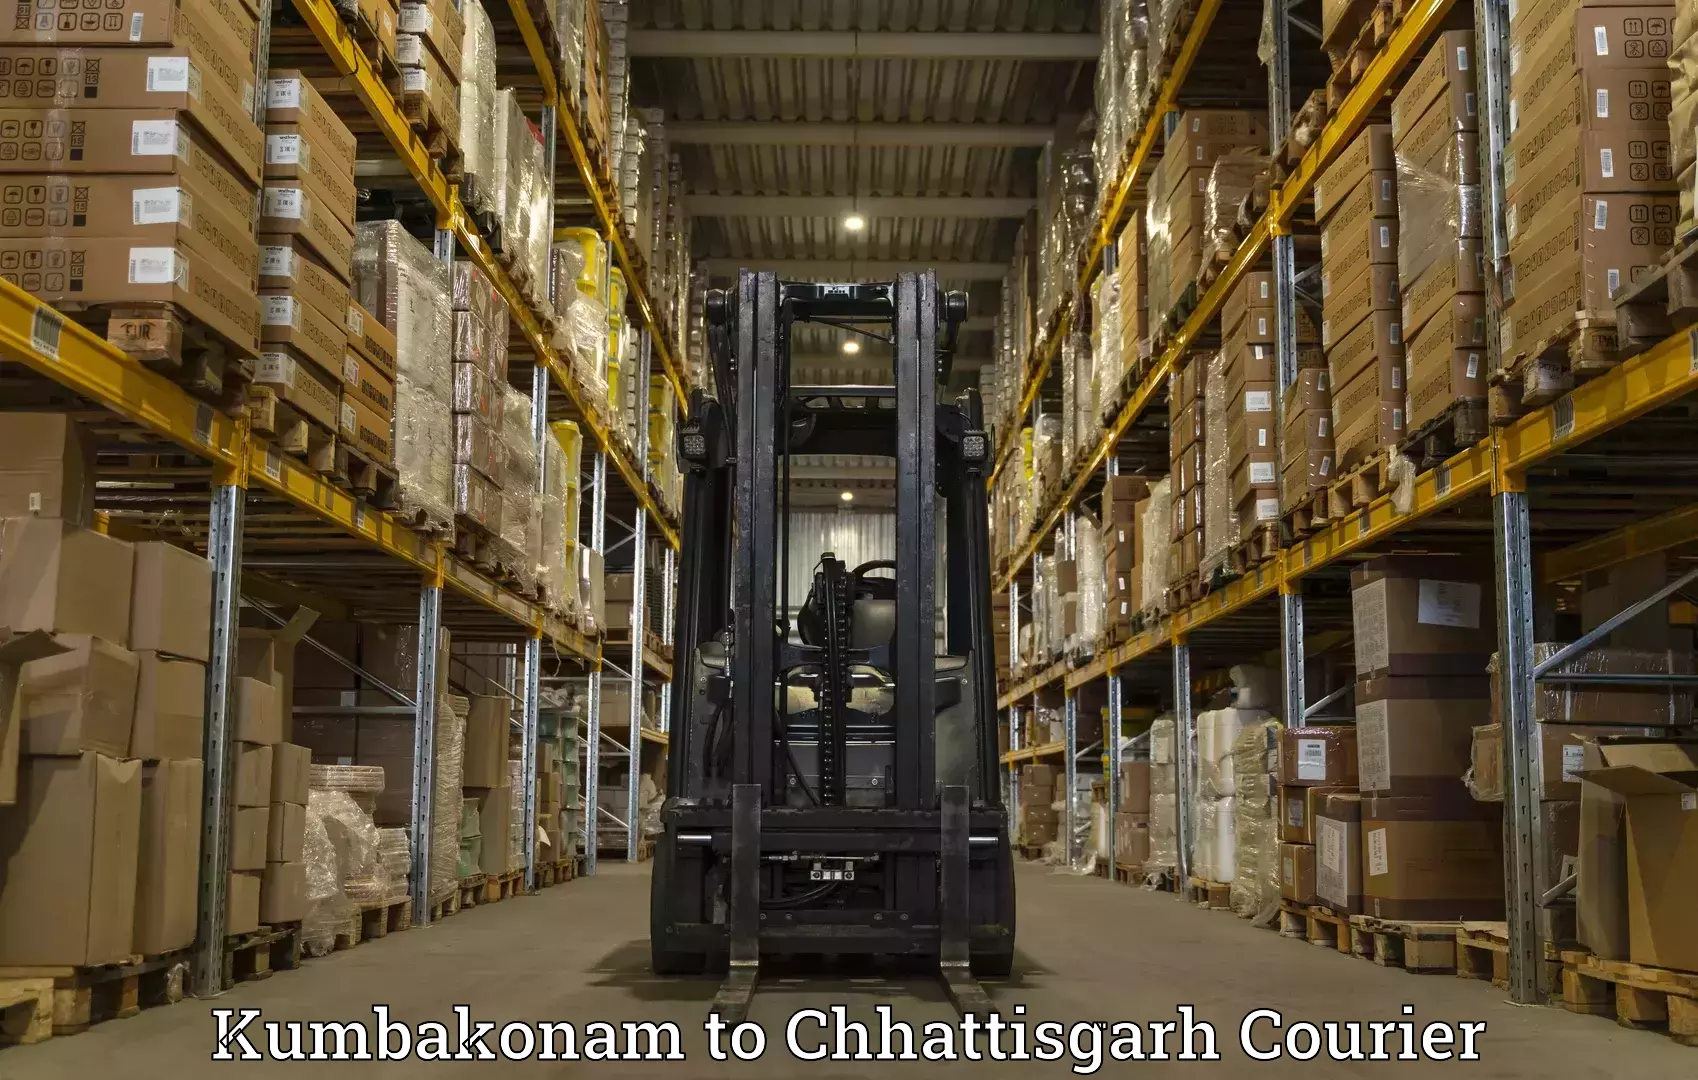 High-performance logistics Kumbakonam to Korea Chhattisgarh